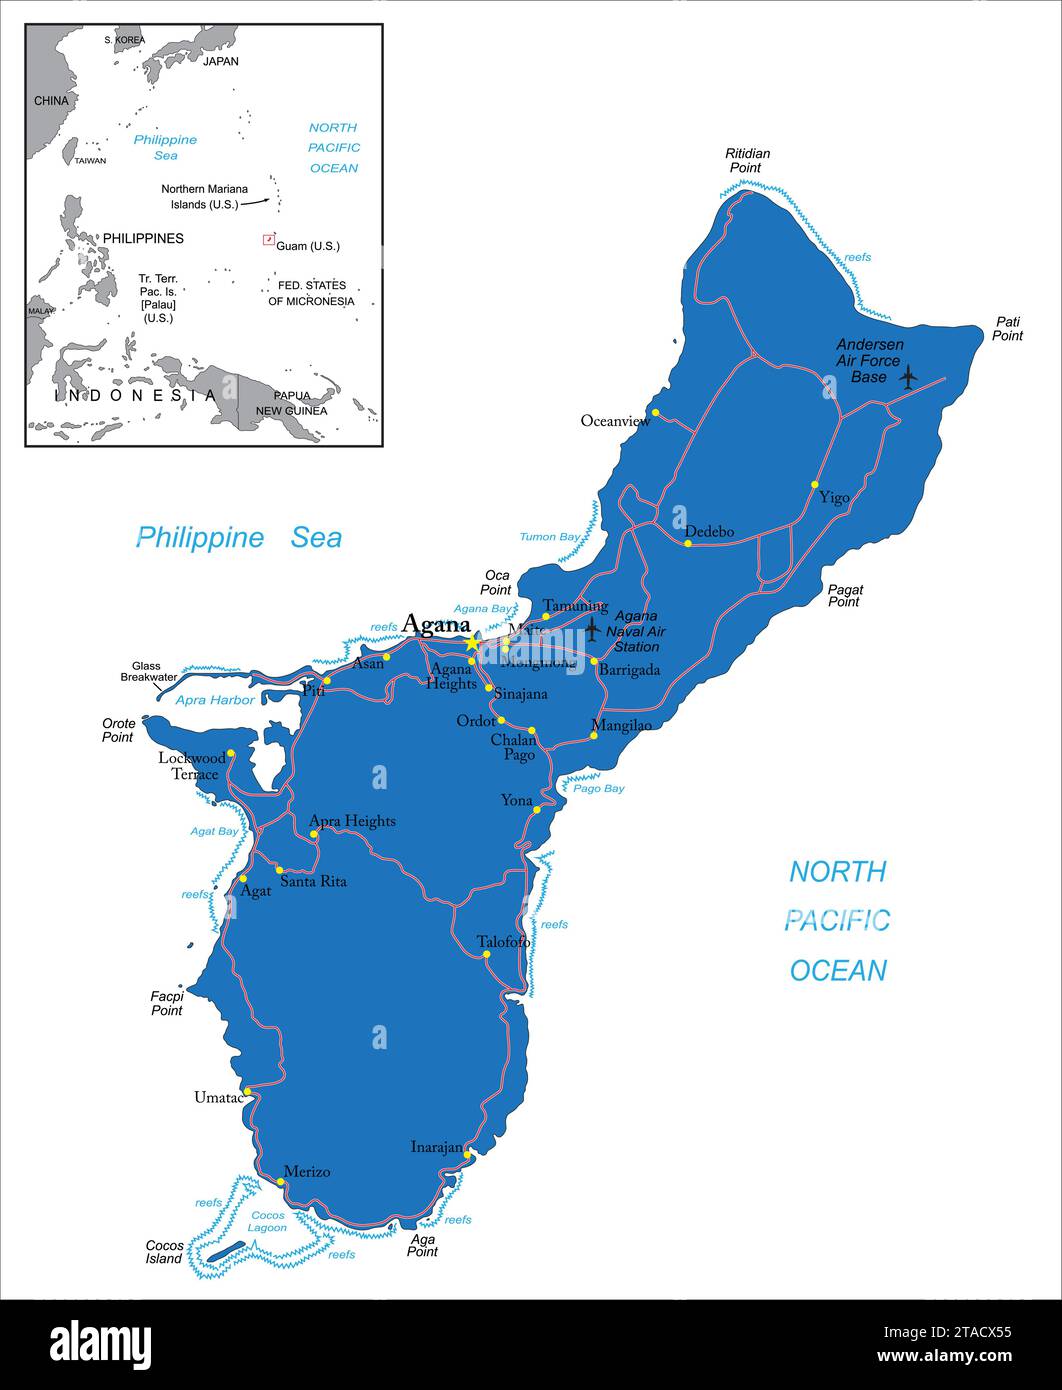 Mappa vettoriale politica altamente dettagliata dell'isola di Guam con le regioni amministrative e le principali città. Illustrazione Vettoriale